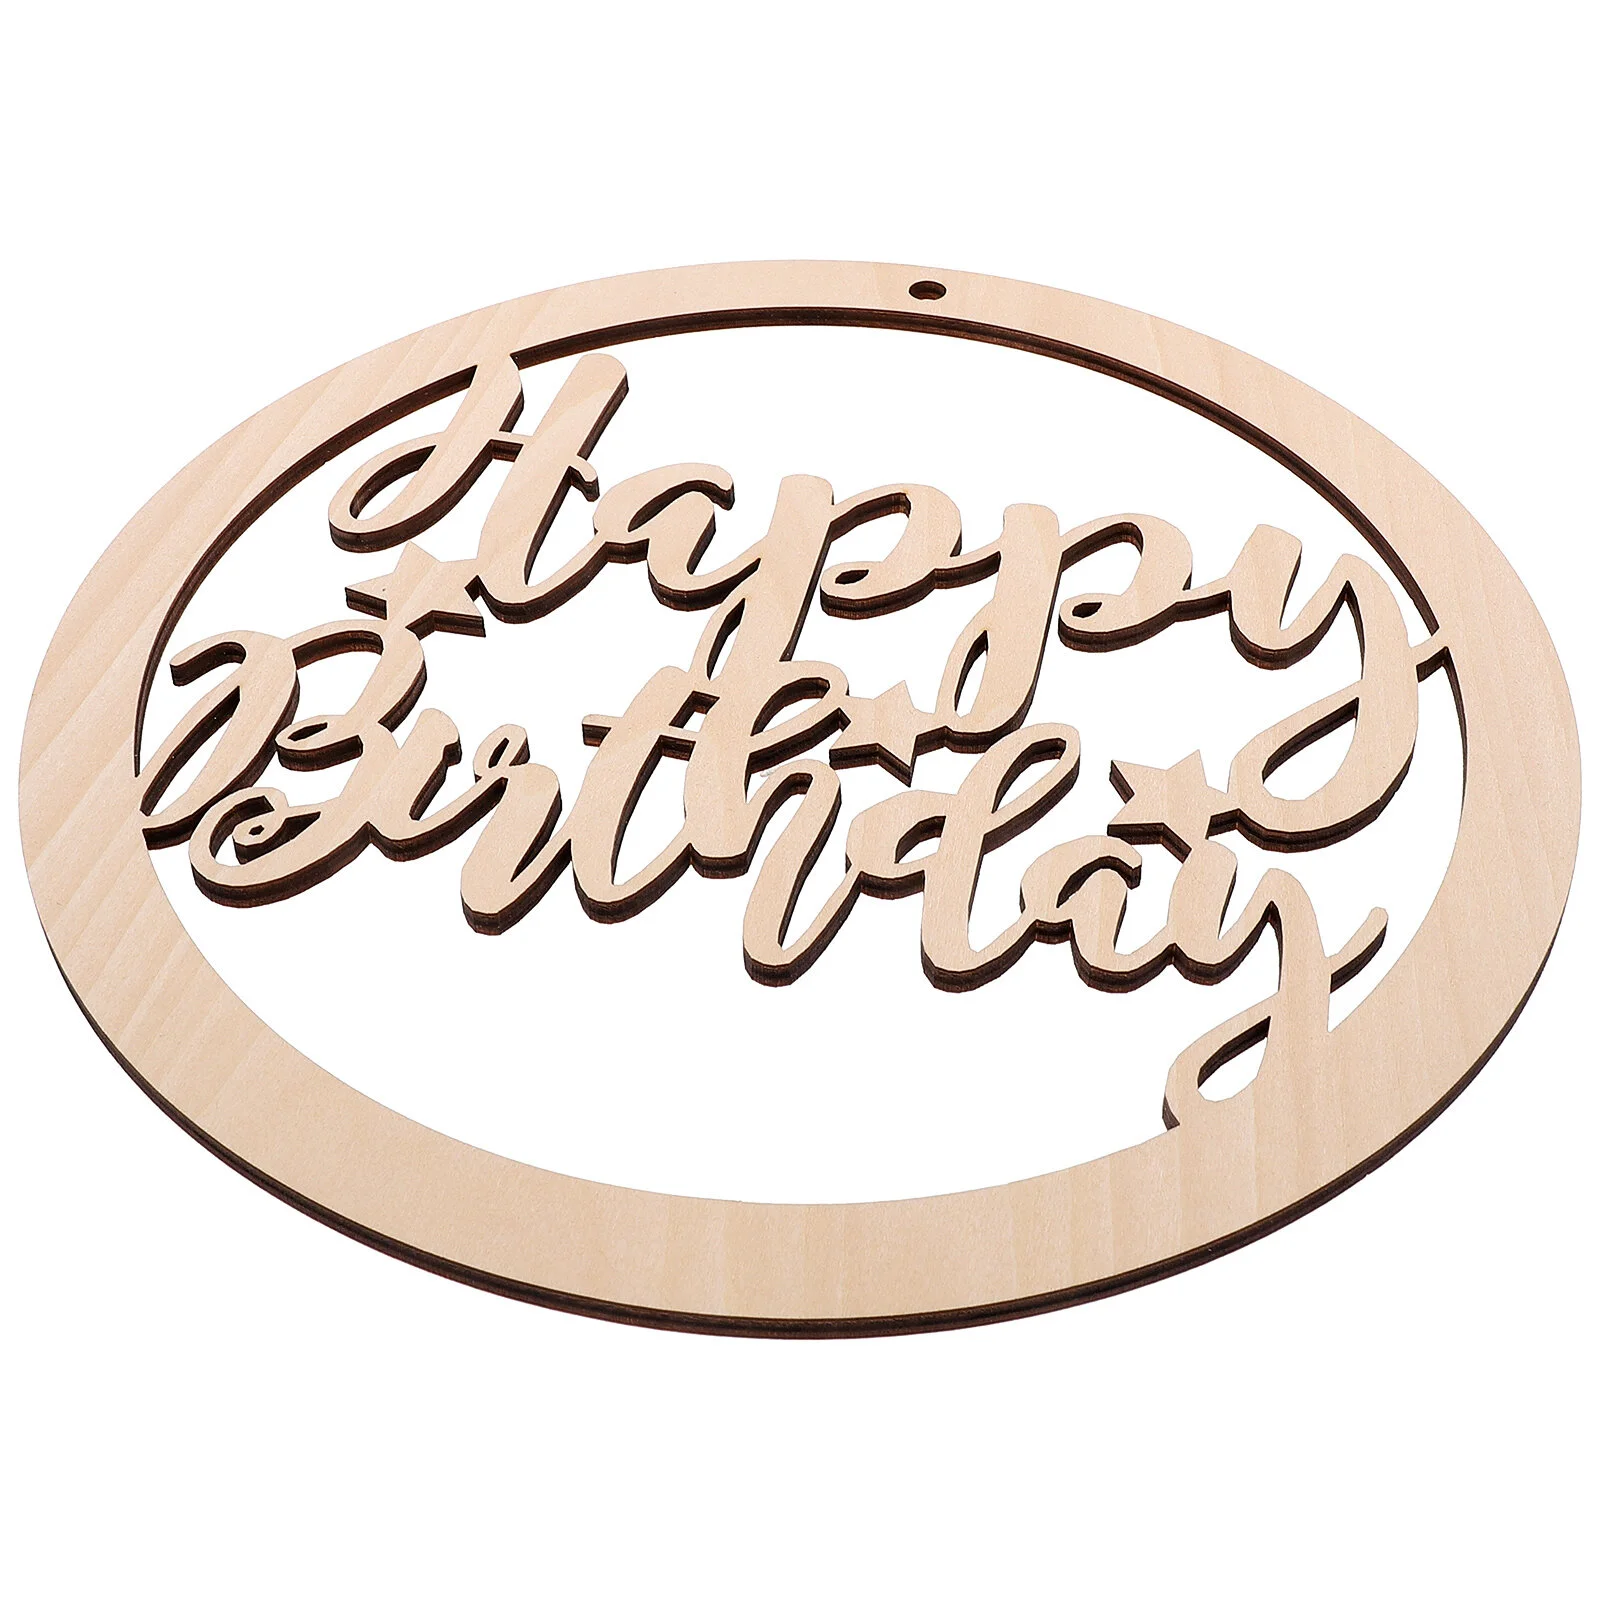 

Круглая декоративная доска для дня рождения, деревянные буквы, бирка, фоновая тарелка-Диаметр: 30 см.